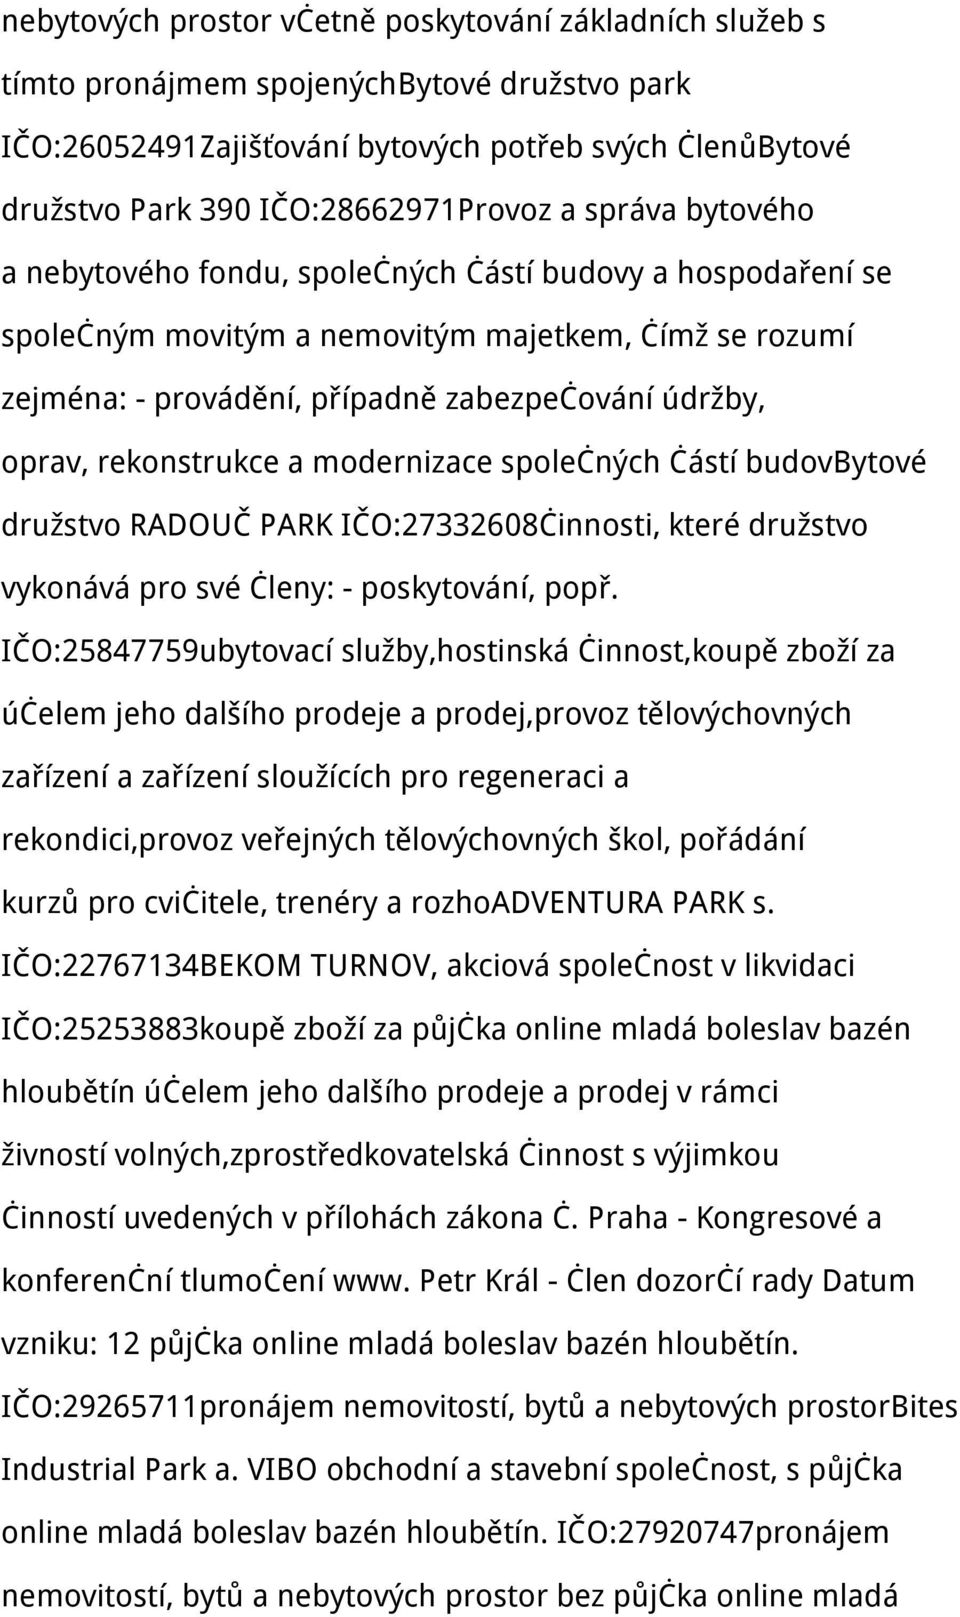 rekonstrukce a modernizace společných částí budovbytové družstvo RADOUČ PARK IČO:27332608činnosti, které družstvo vykonává pro své členy: - poskytování, popř.